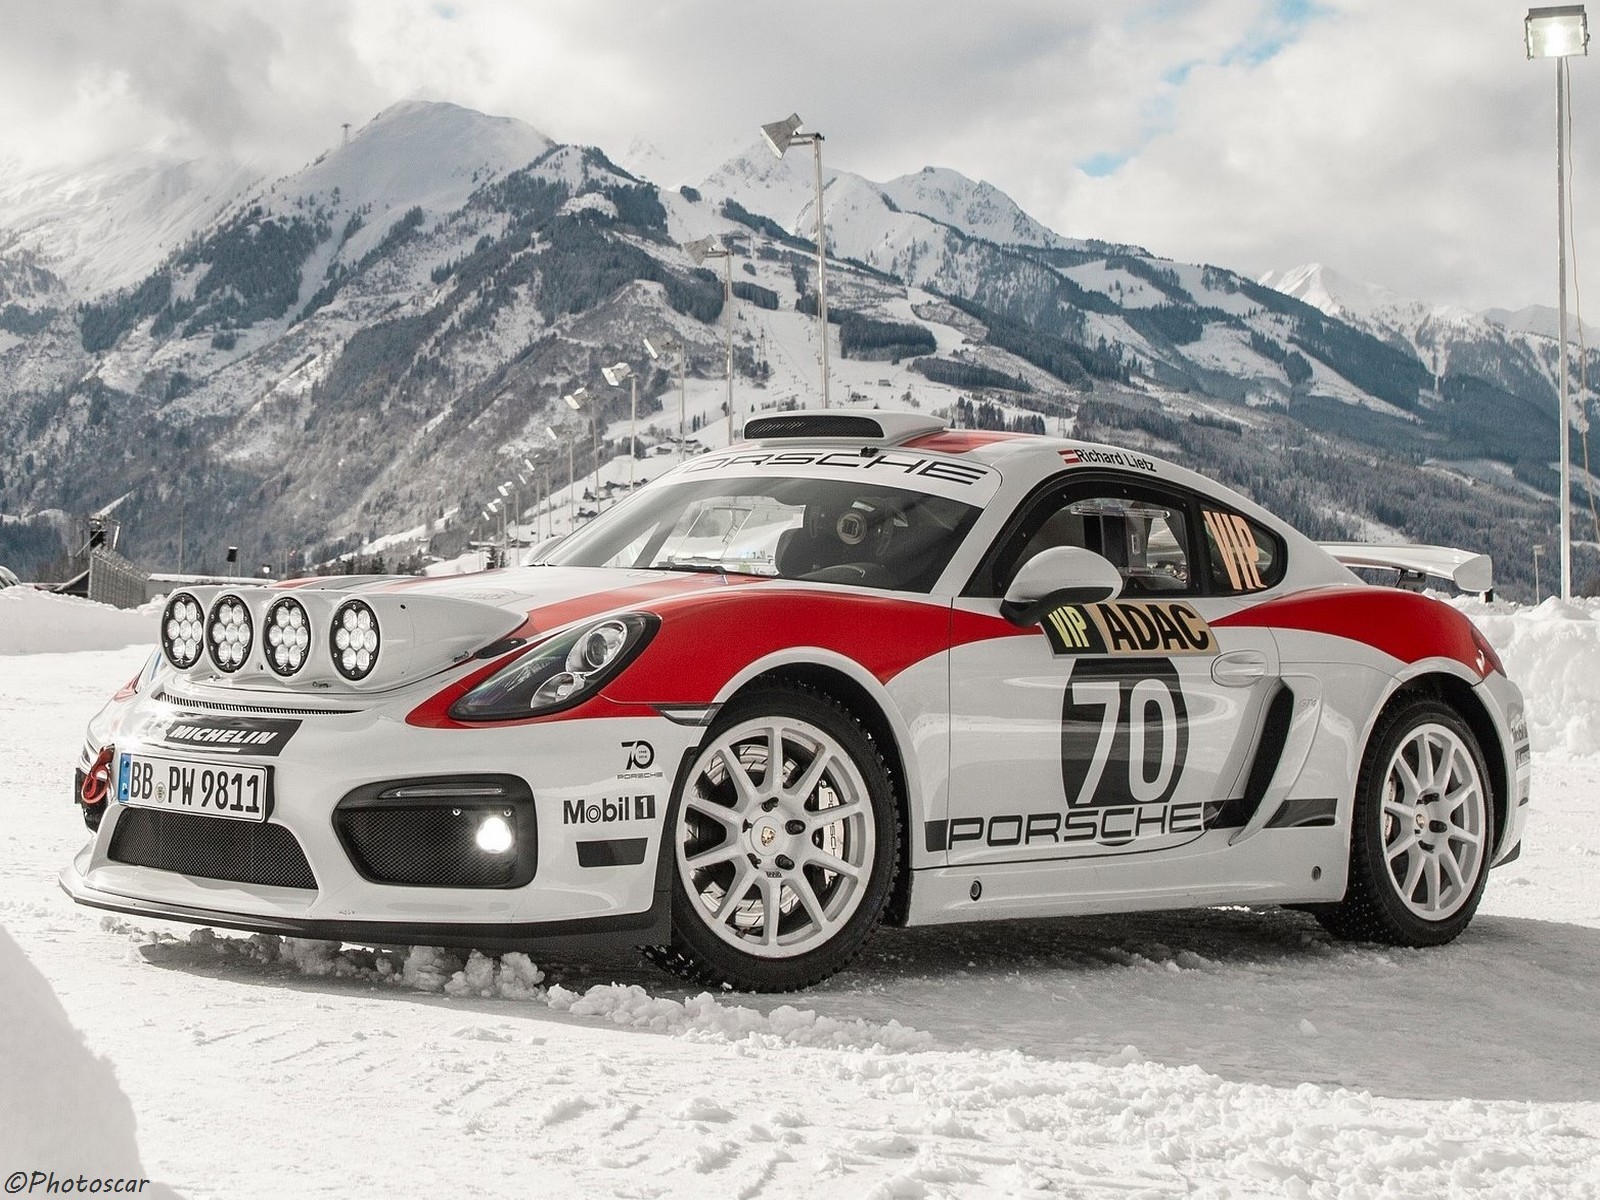 Porsche Cayman GT4 Rallye Concept 2019 prêt à disputer la saison 2020